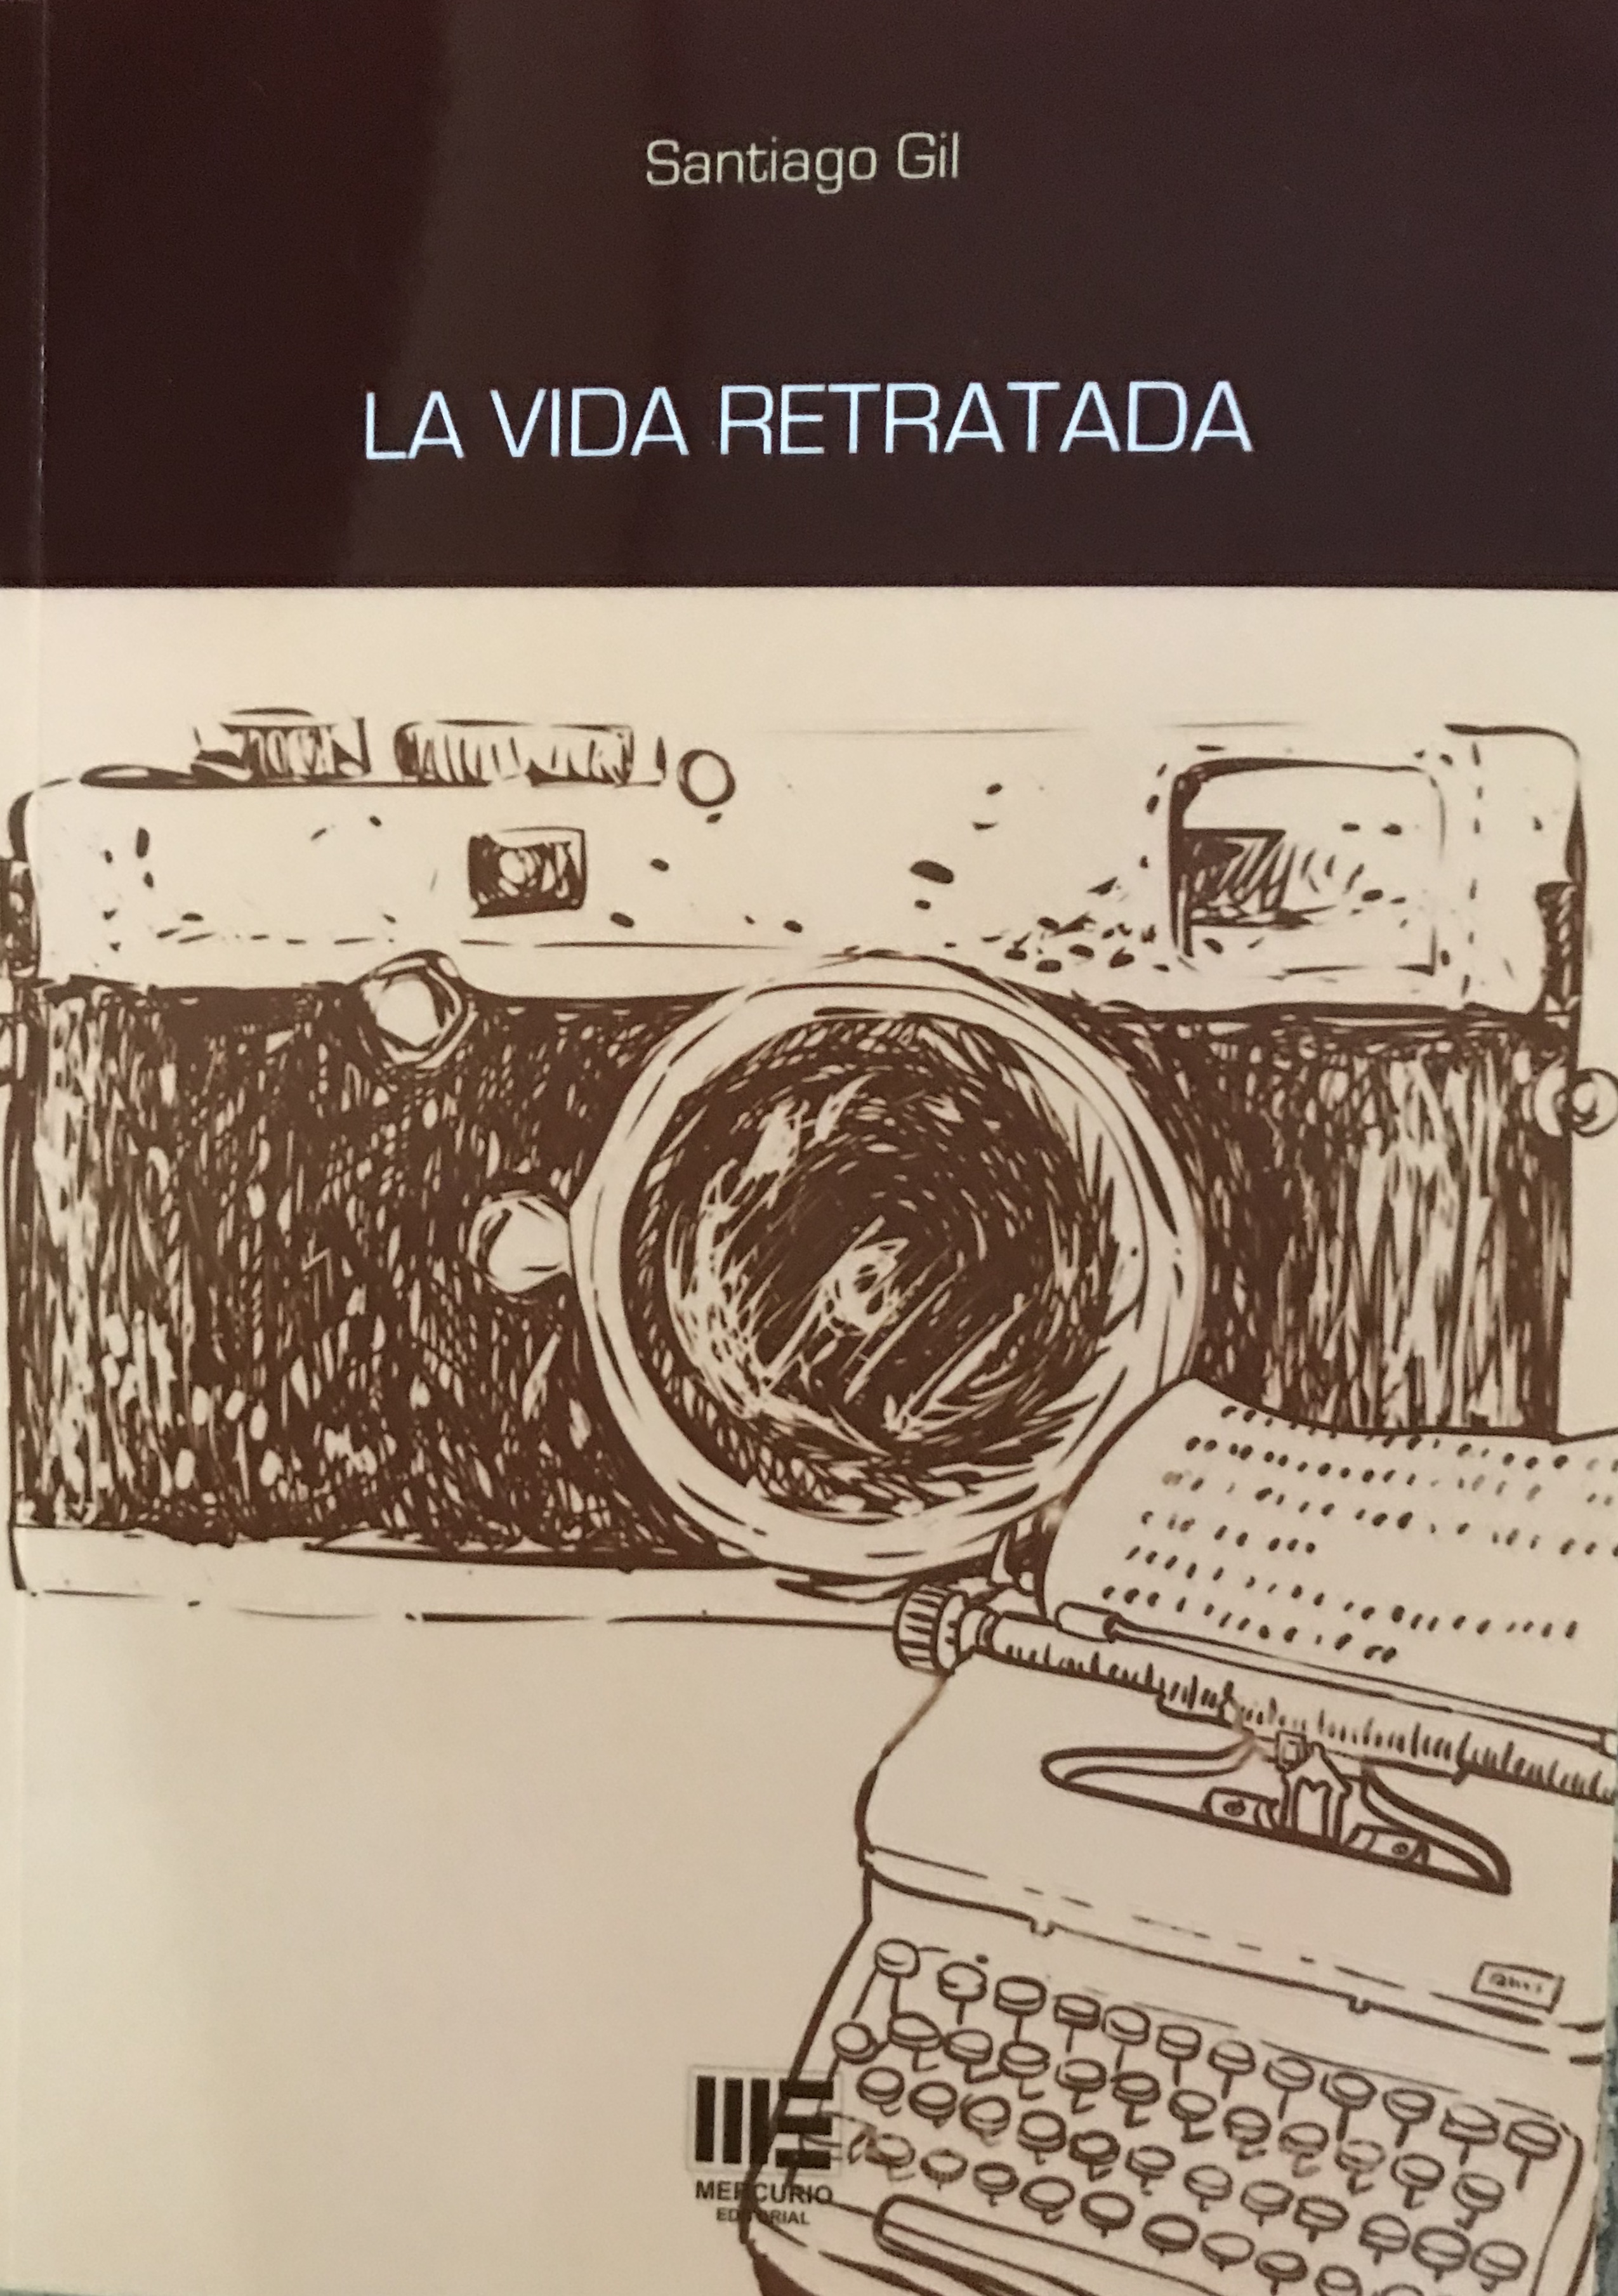 El municipio de Guía acoge la presentación del último libro de Santiago Gil, “La vida retratada”